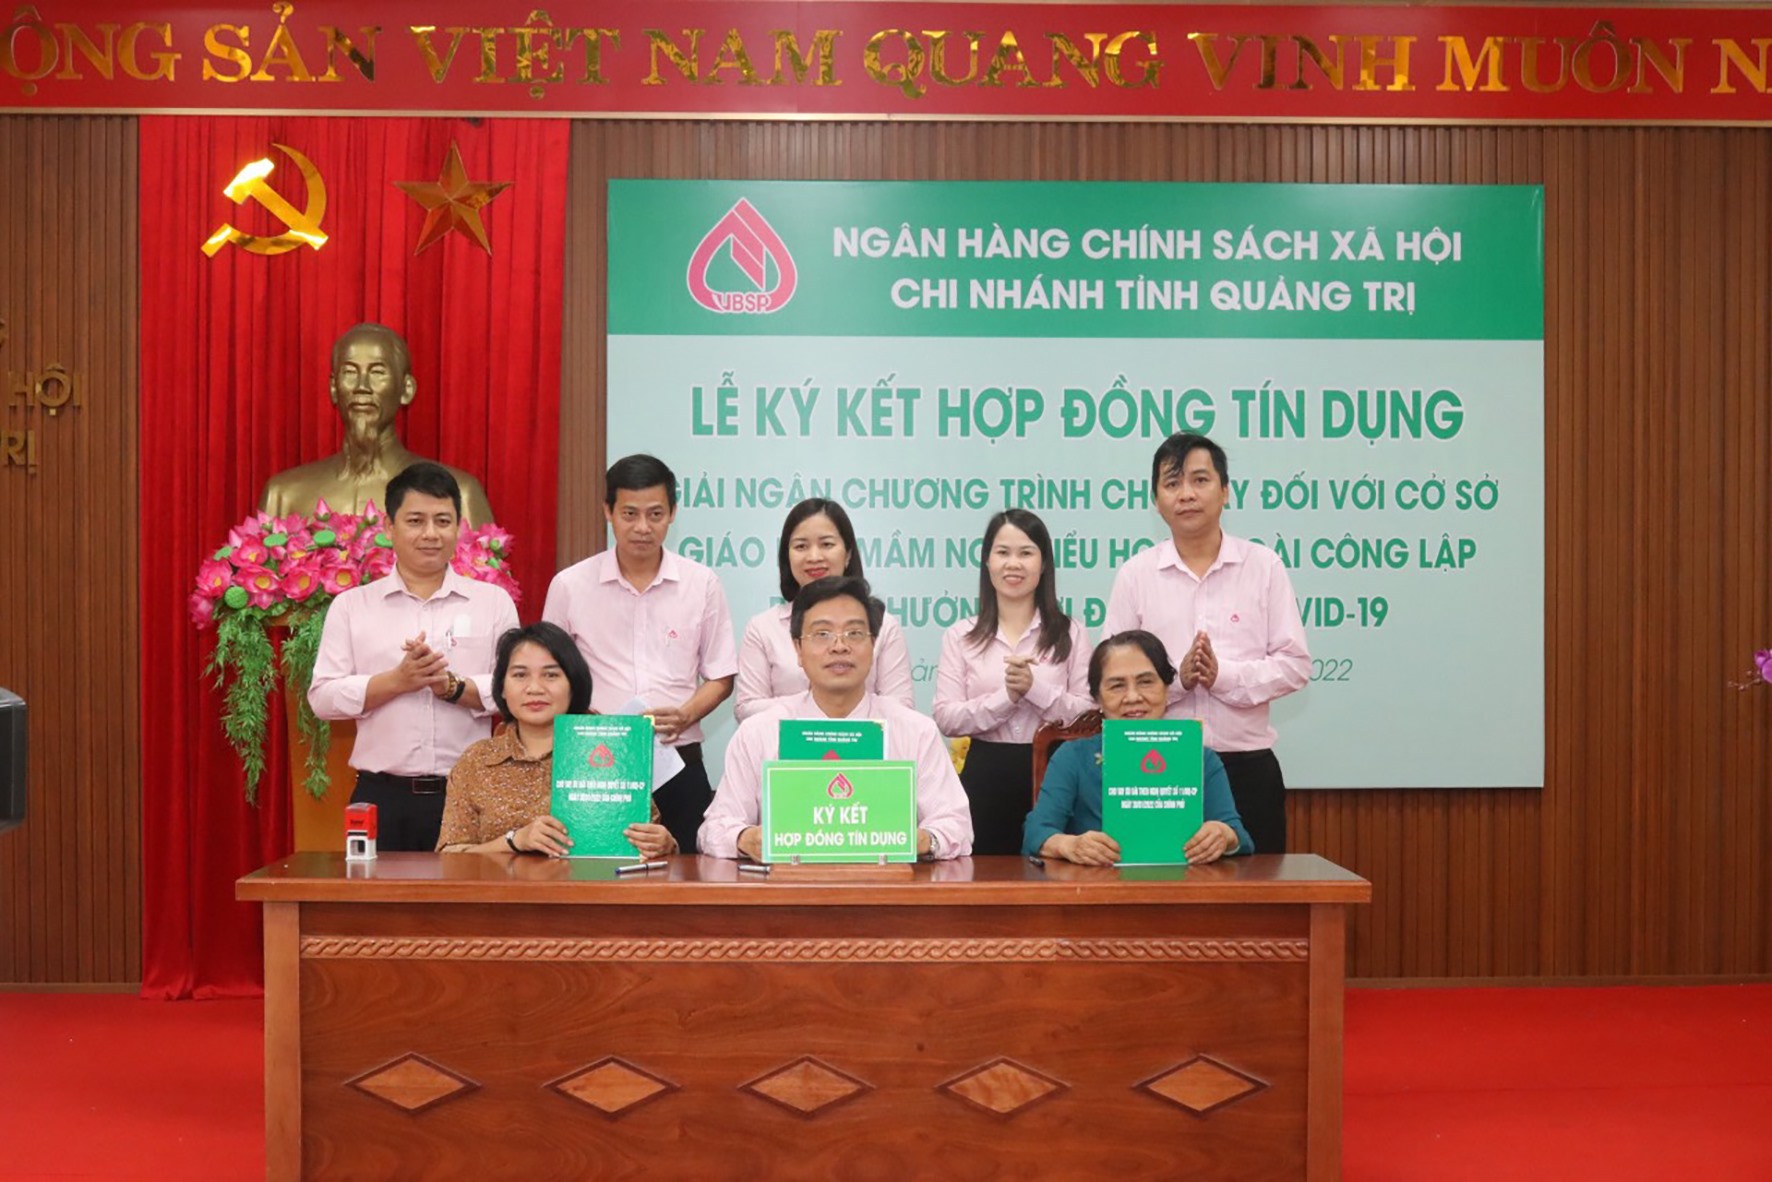 Ký kết hợp đồng, giải ngân tín dụng ưu đãi do ảnh hưởng COVID-19 cho 2 trường mầm non ngoài công lập đầu tiên ở Quảng Trị - Ảnh:M.L